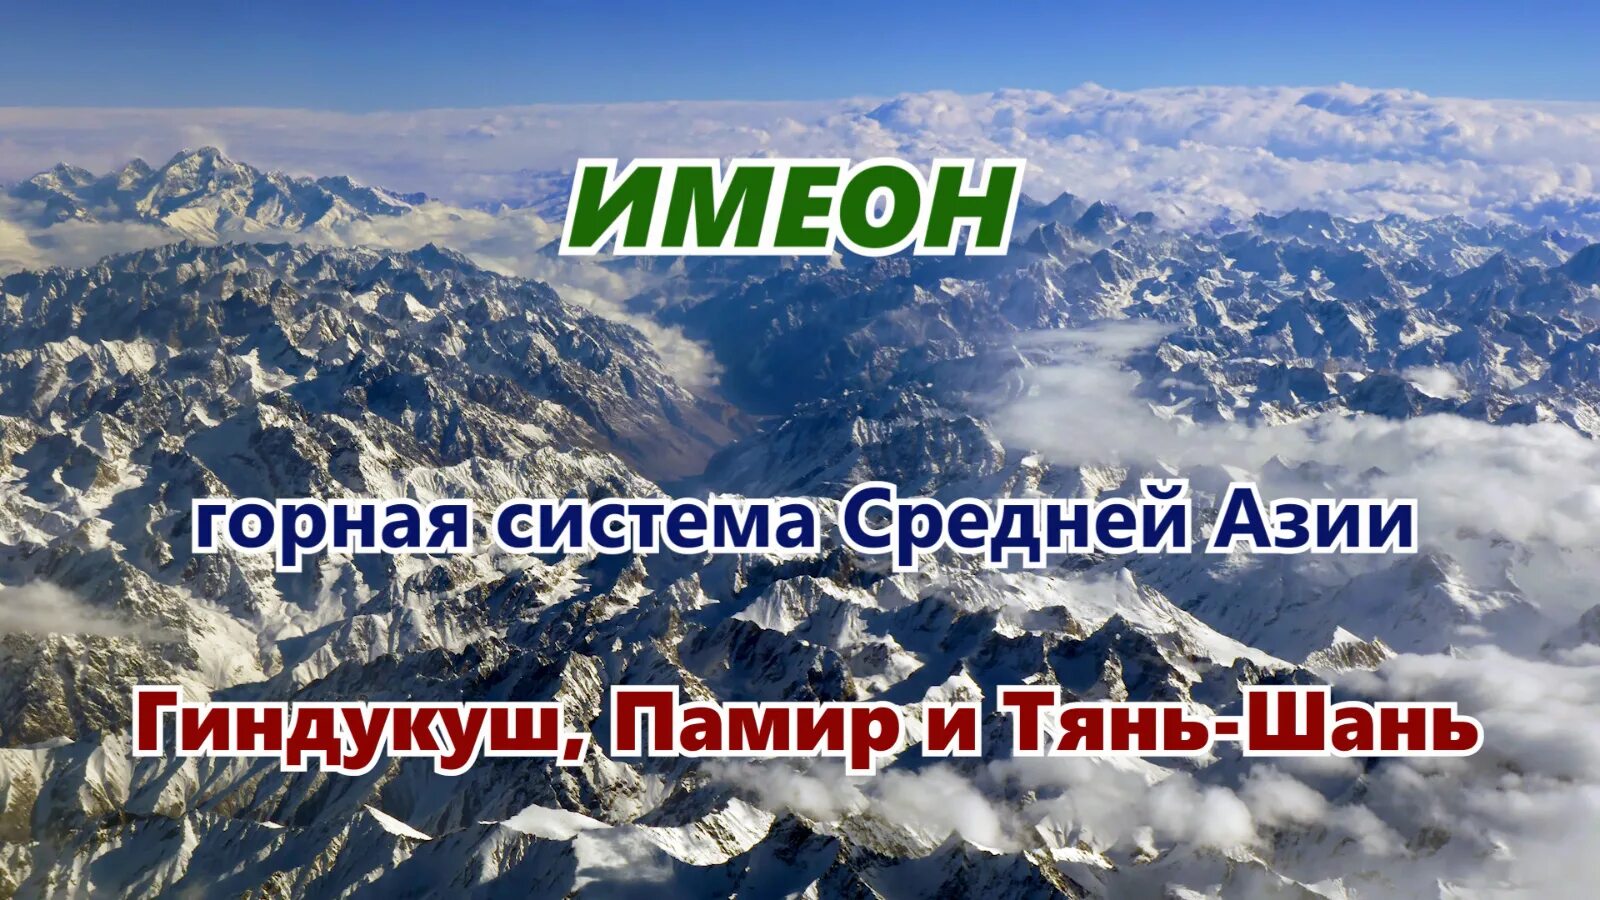 Горная система в средней азии. Горные системы средней Азии. Картинка гора Памир Тянь - Шань Гиндукуш. Горы Памира и Тянь-Шаня. Выше гор только горы.